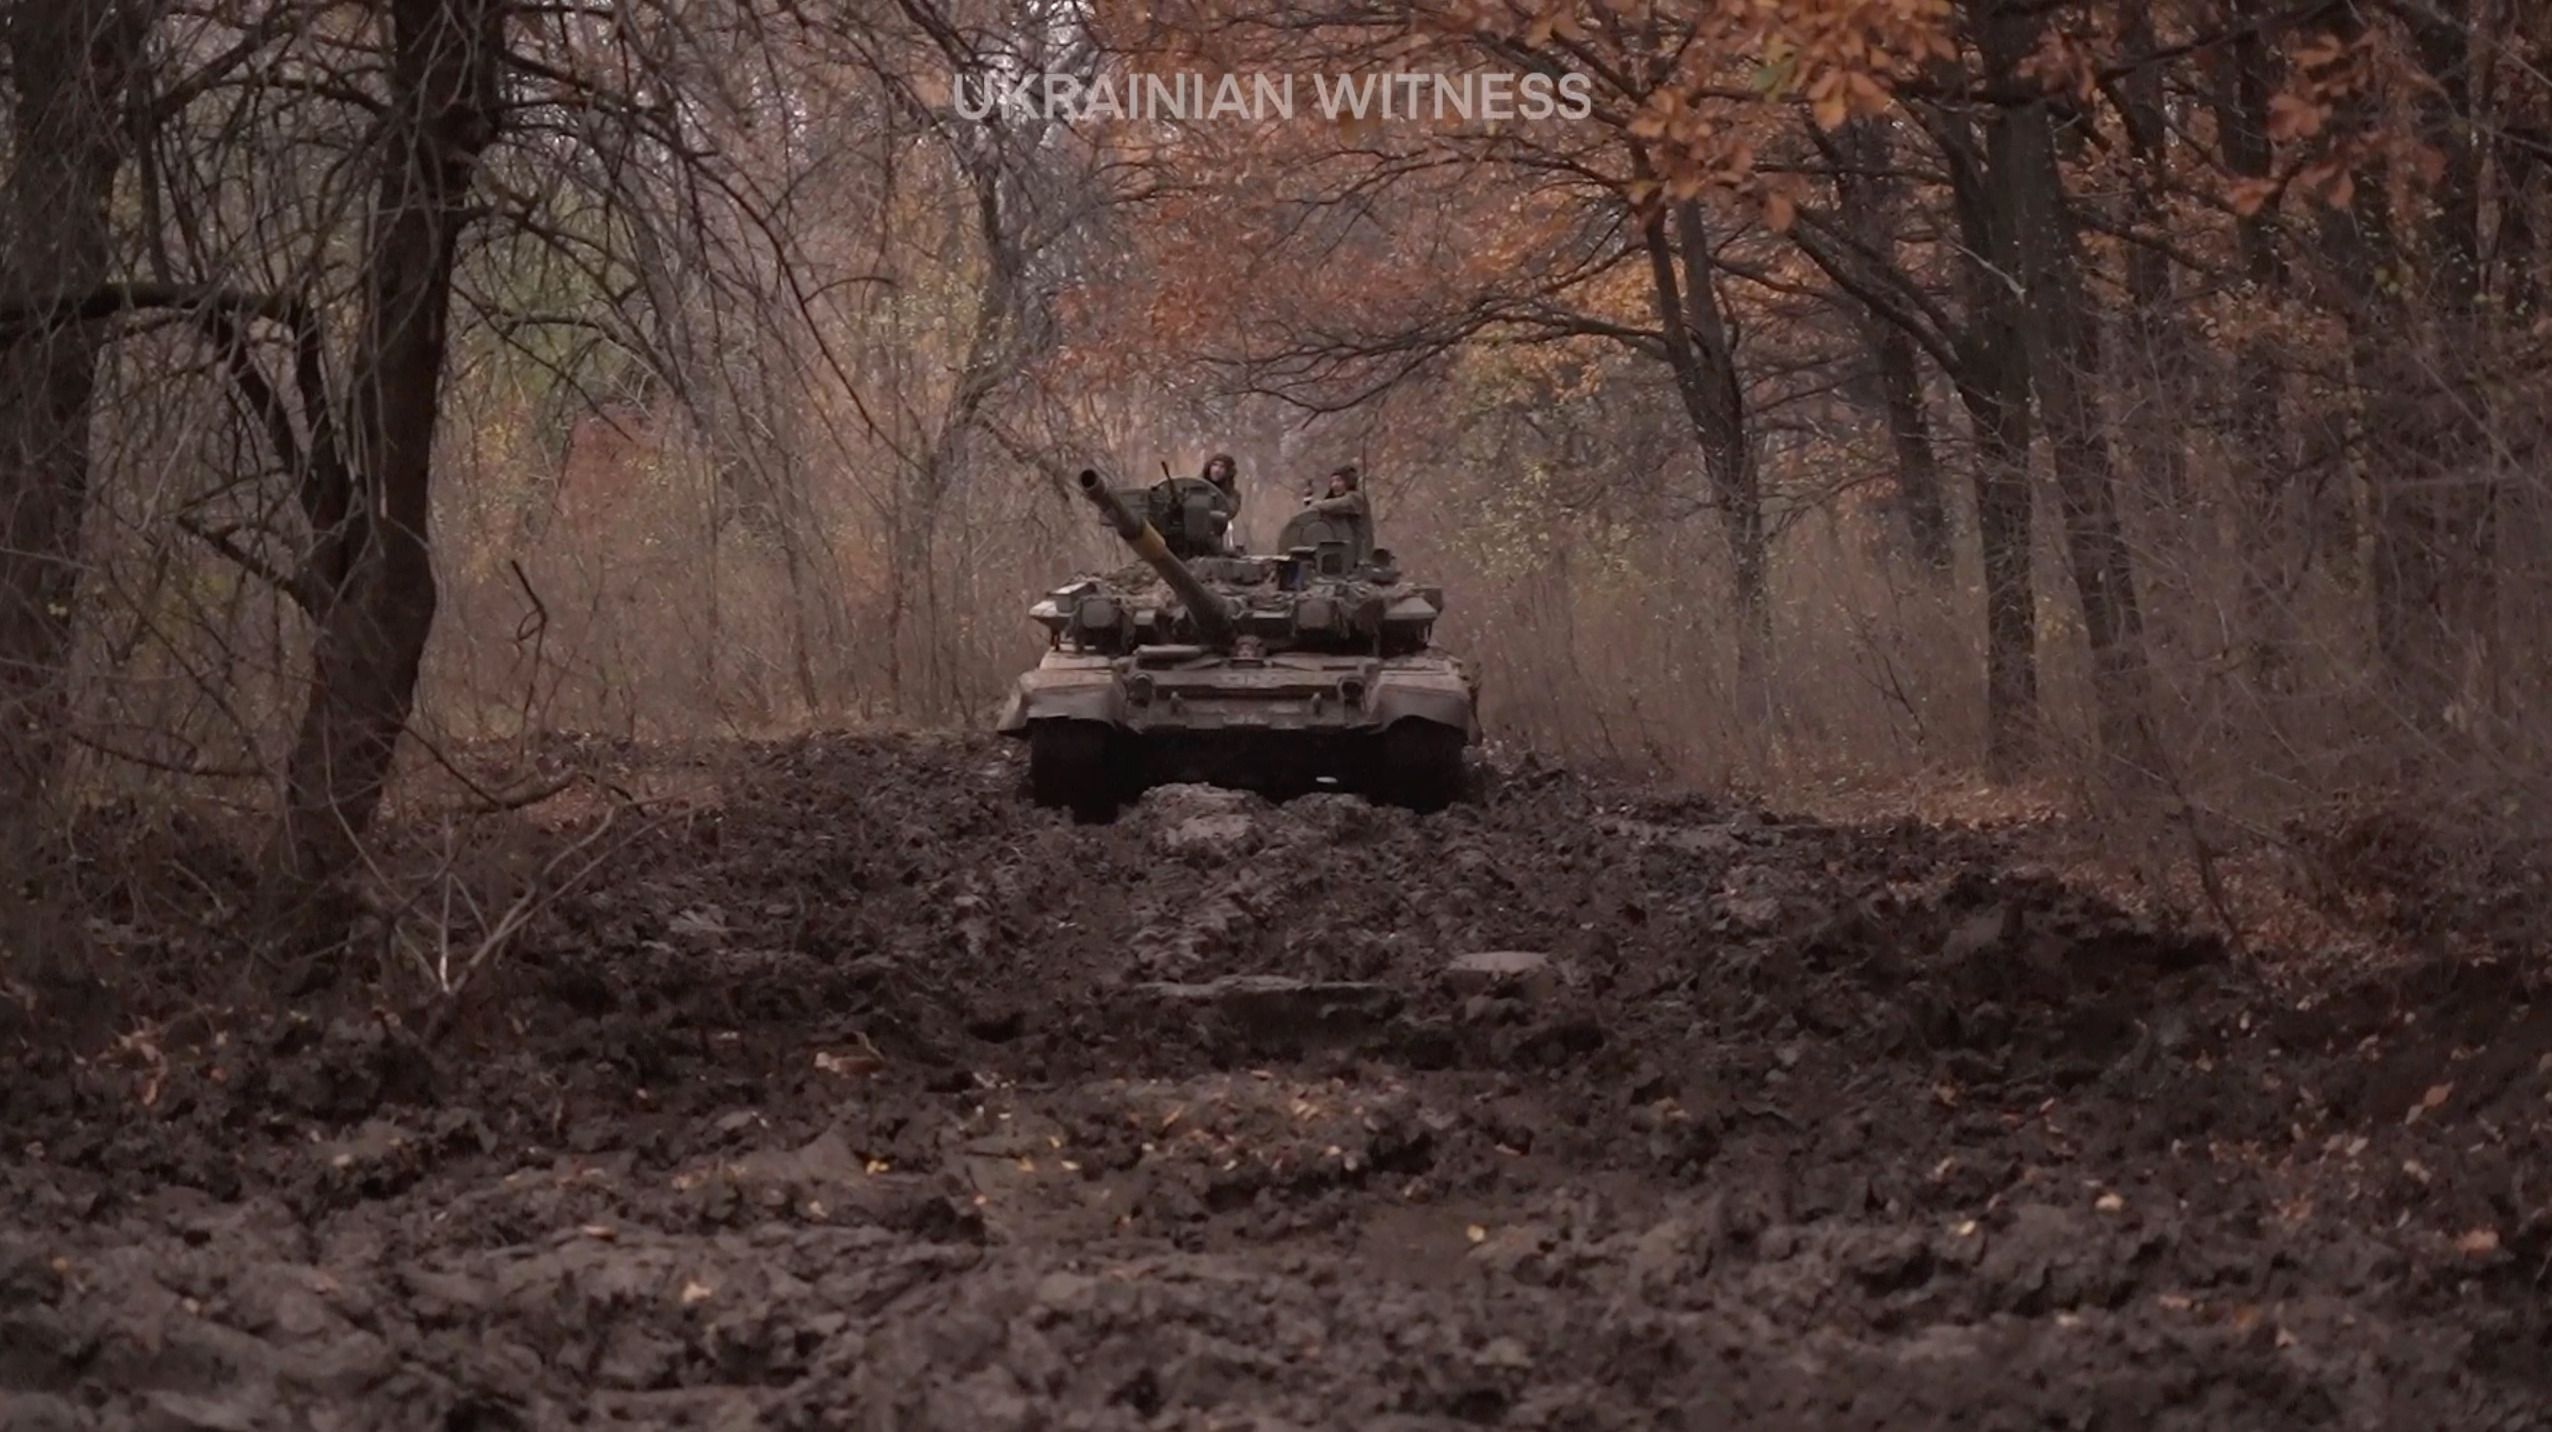 Як тврофейний танк Т-90 працює проти росіян